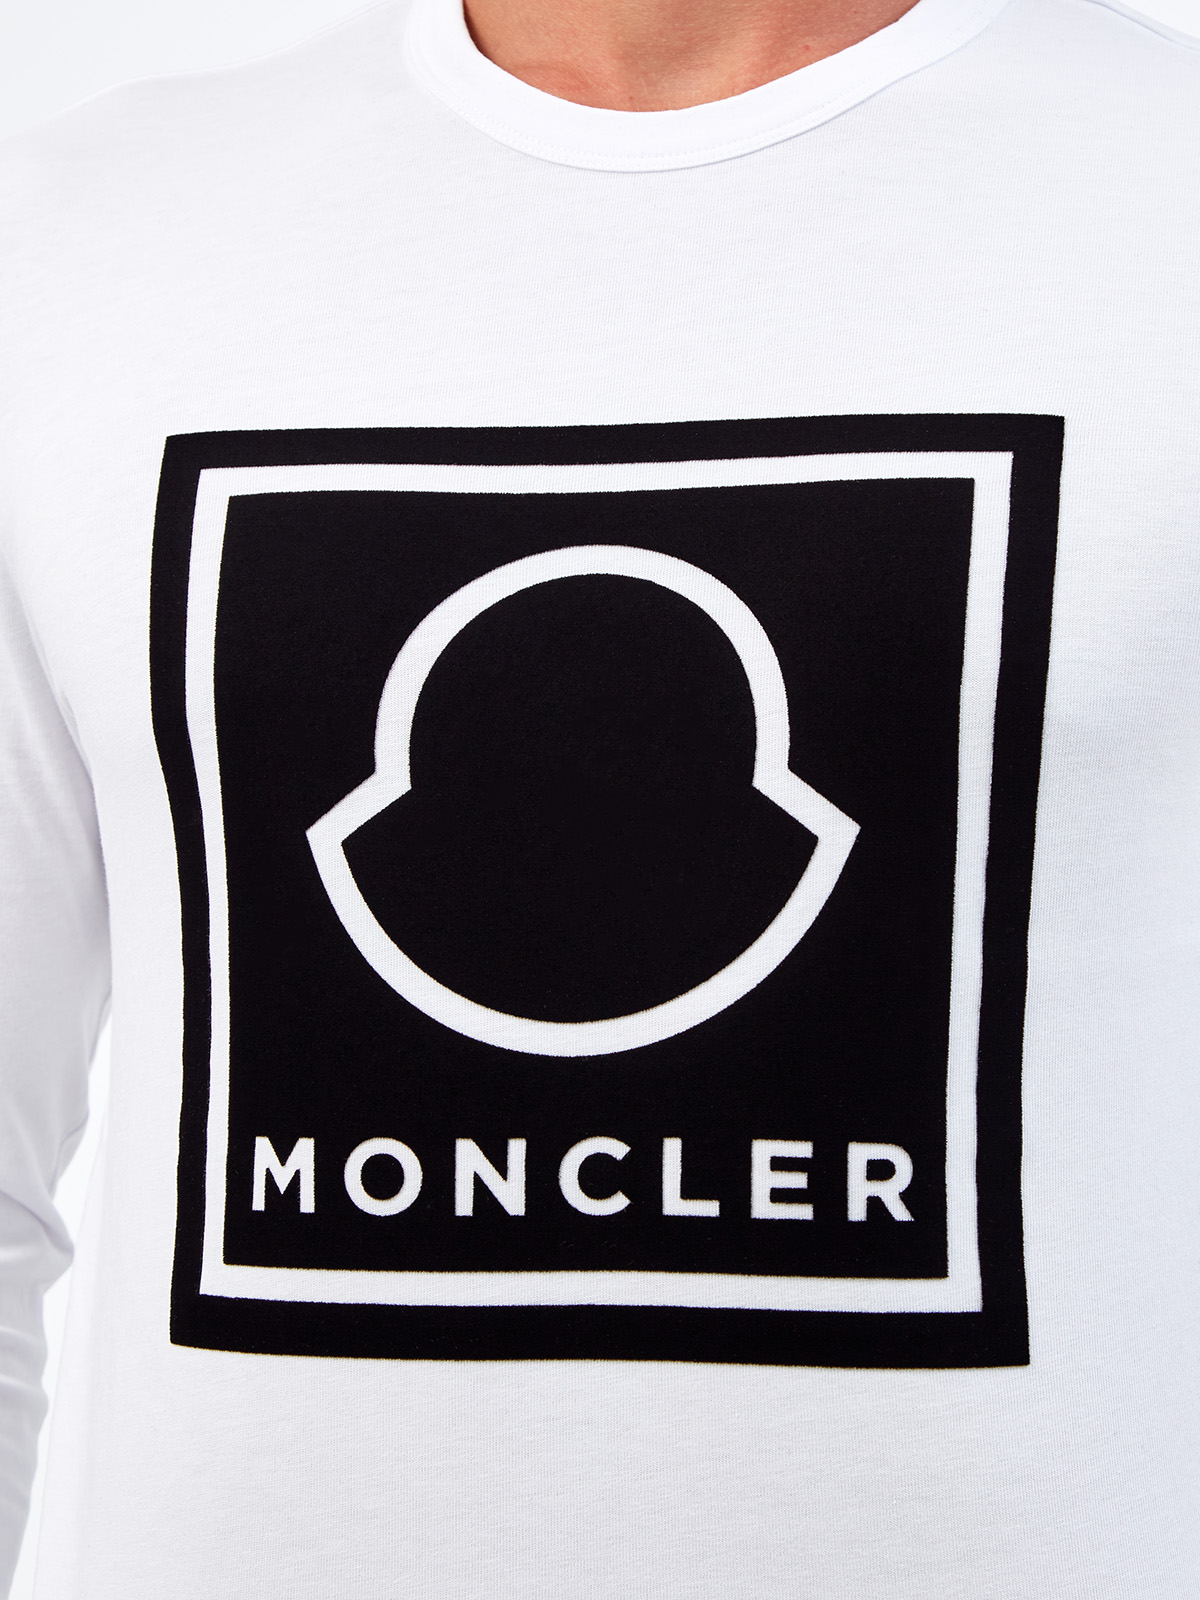 Хлопковый лонгслив с макро-логотипом бренда MONCLER, цвет белый, размер L;2XL;M;XL - фото 5